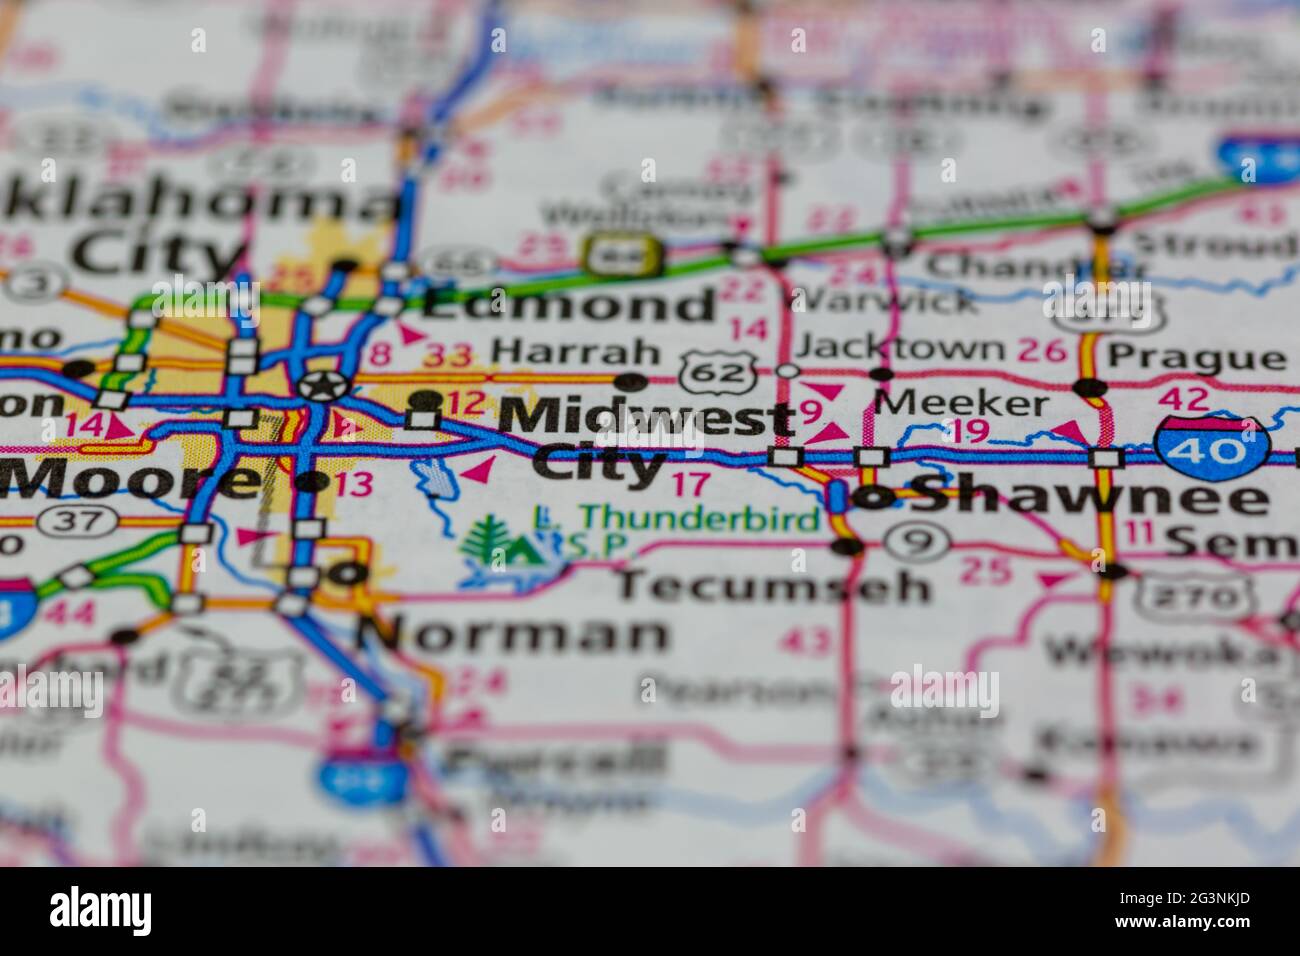 Midwest City Oklahoma USA auf einer Geographie- oder Straßenkarte angezeigt Stockfoto